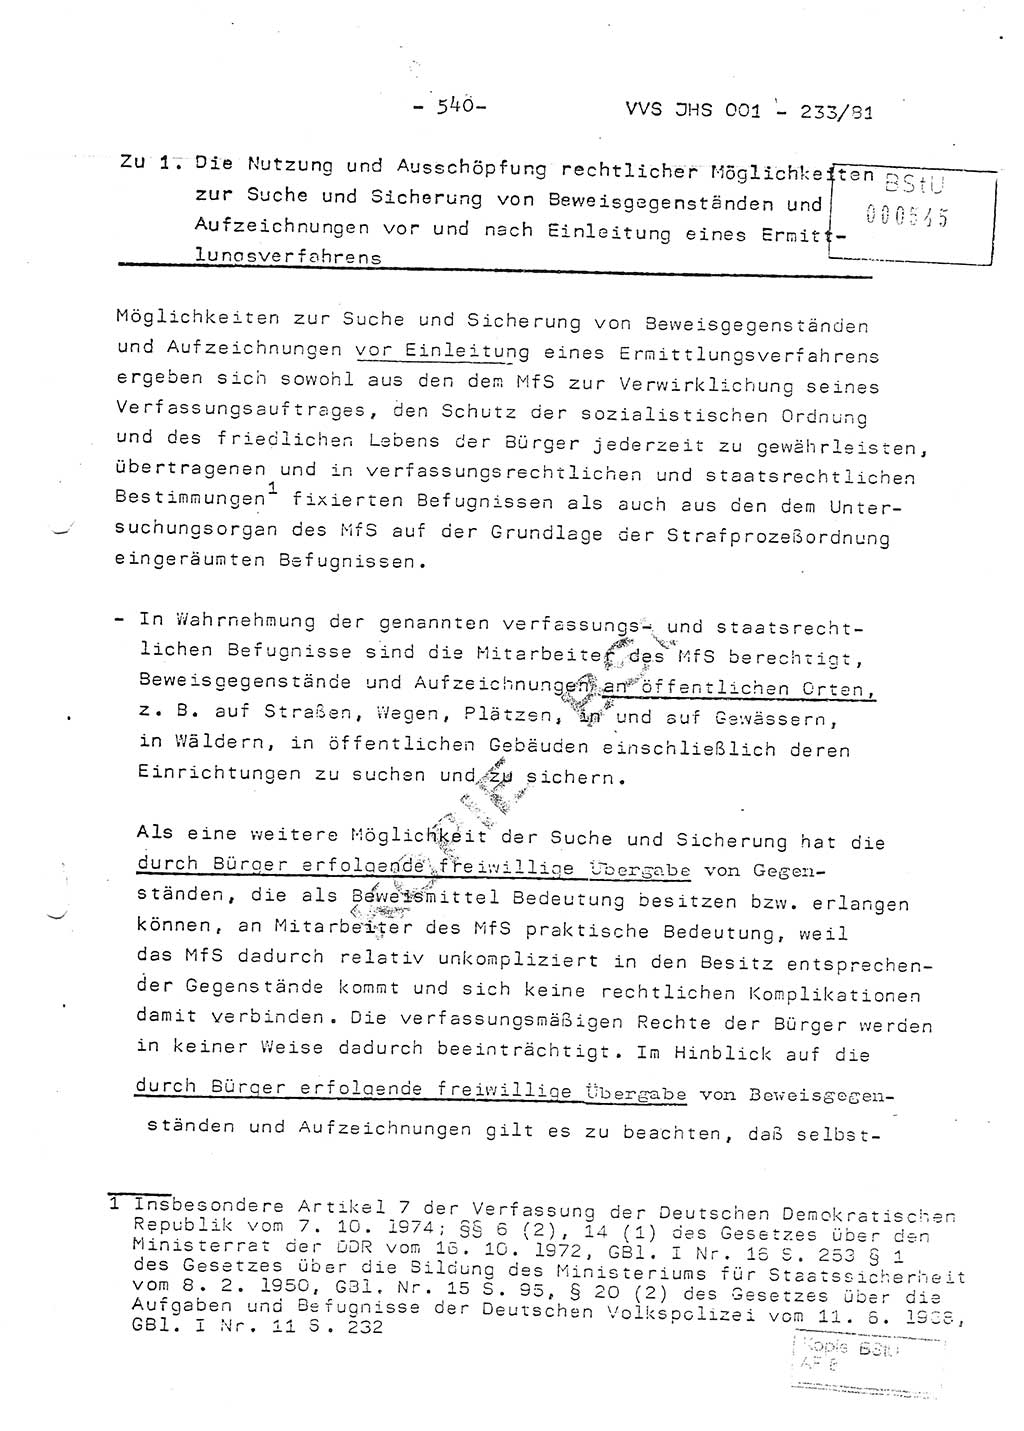 Dissertation Oberstleutnant Horst Zank (JHS), Oberstleutnant Dr. Karl-Heinz Knoblauch (JHS), Oberstleutnant Gustav-Adolf Kowalewski (HA Ⅸ), Oberstleutnant Wolfgang Plötner (HA Ⅸ), Ministerium für Staatssicherheit (MfS) [Deutsche Demokratische Republik (DDR)], Juristische Hochschule (JHS), Vertrauliche Verschlußsache (VVS) o001-233/81, Potsdam 1981, Blatt 540 (Diss. MfS DDR JHS VVS o001-233/81 1981, Bl. 540)